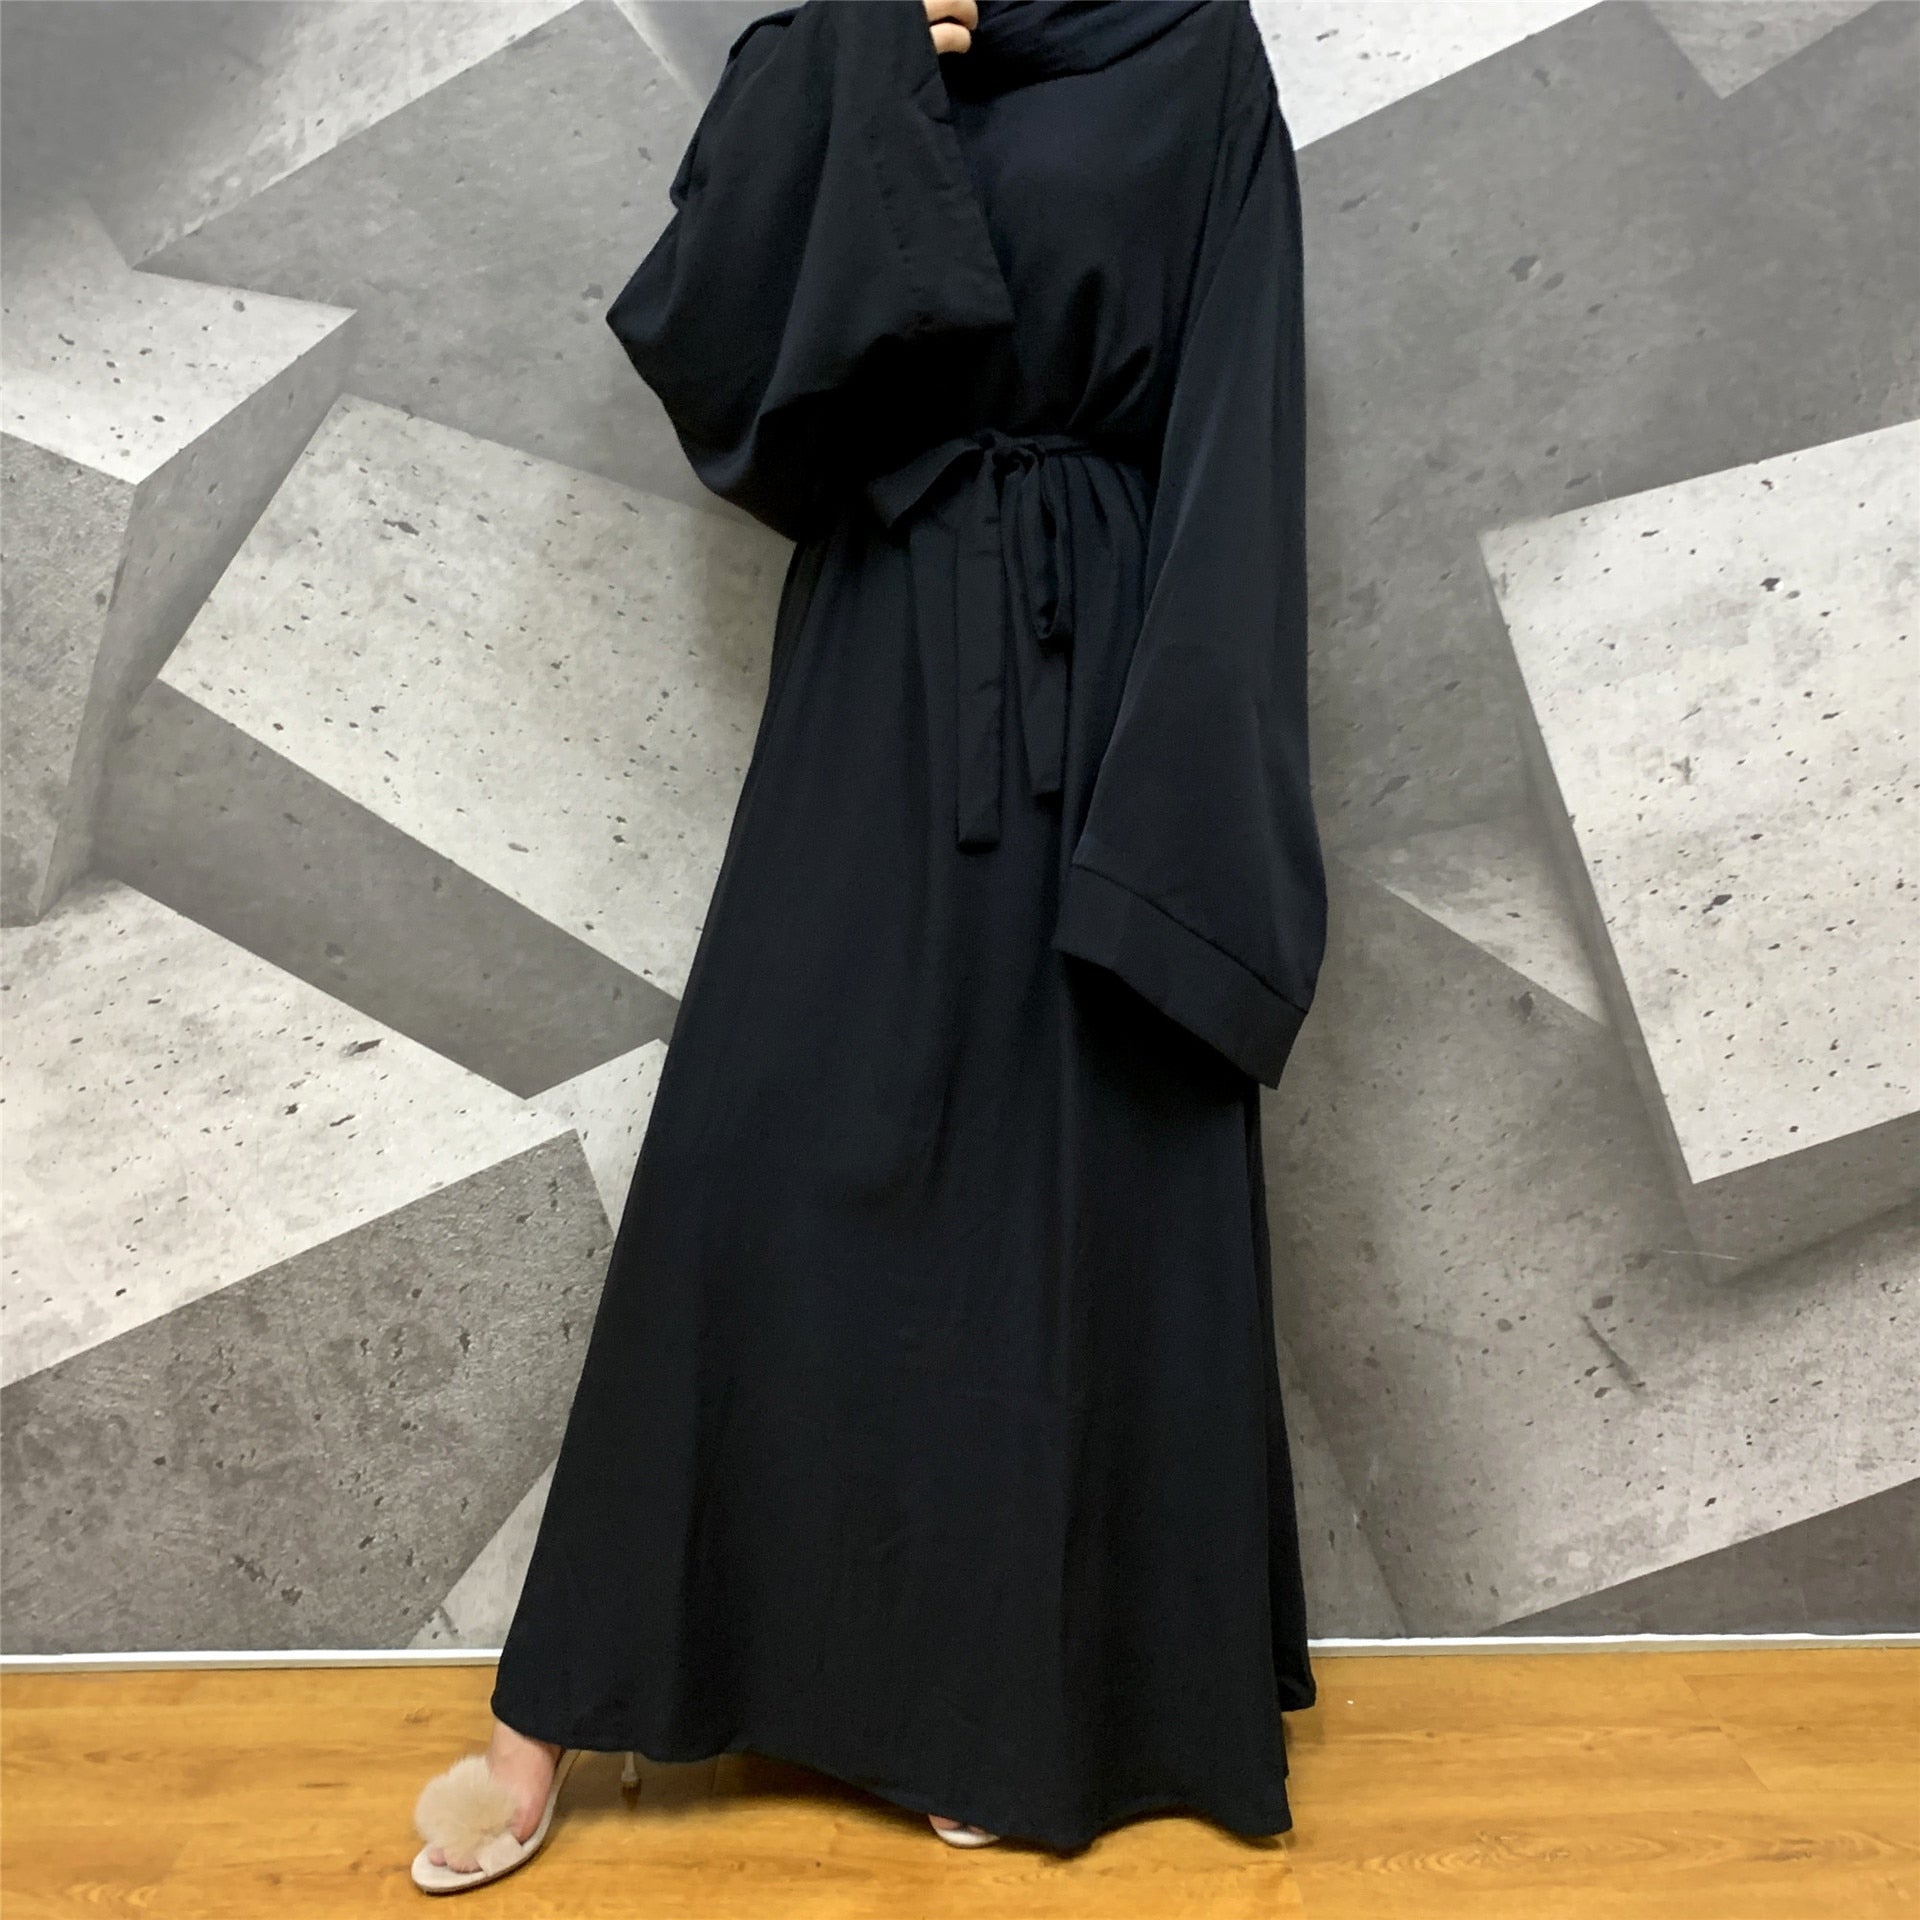 Muslim Fashion With Sashes Islam Clothing Abaya